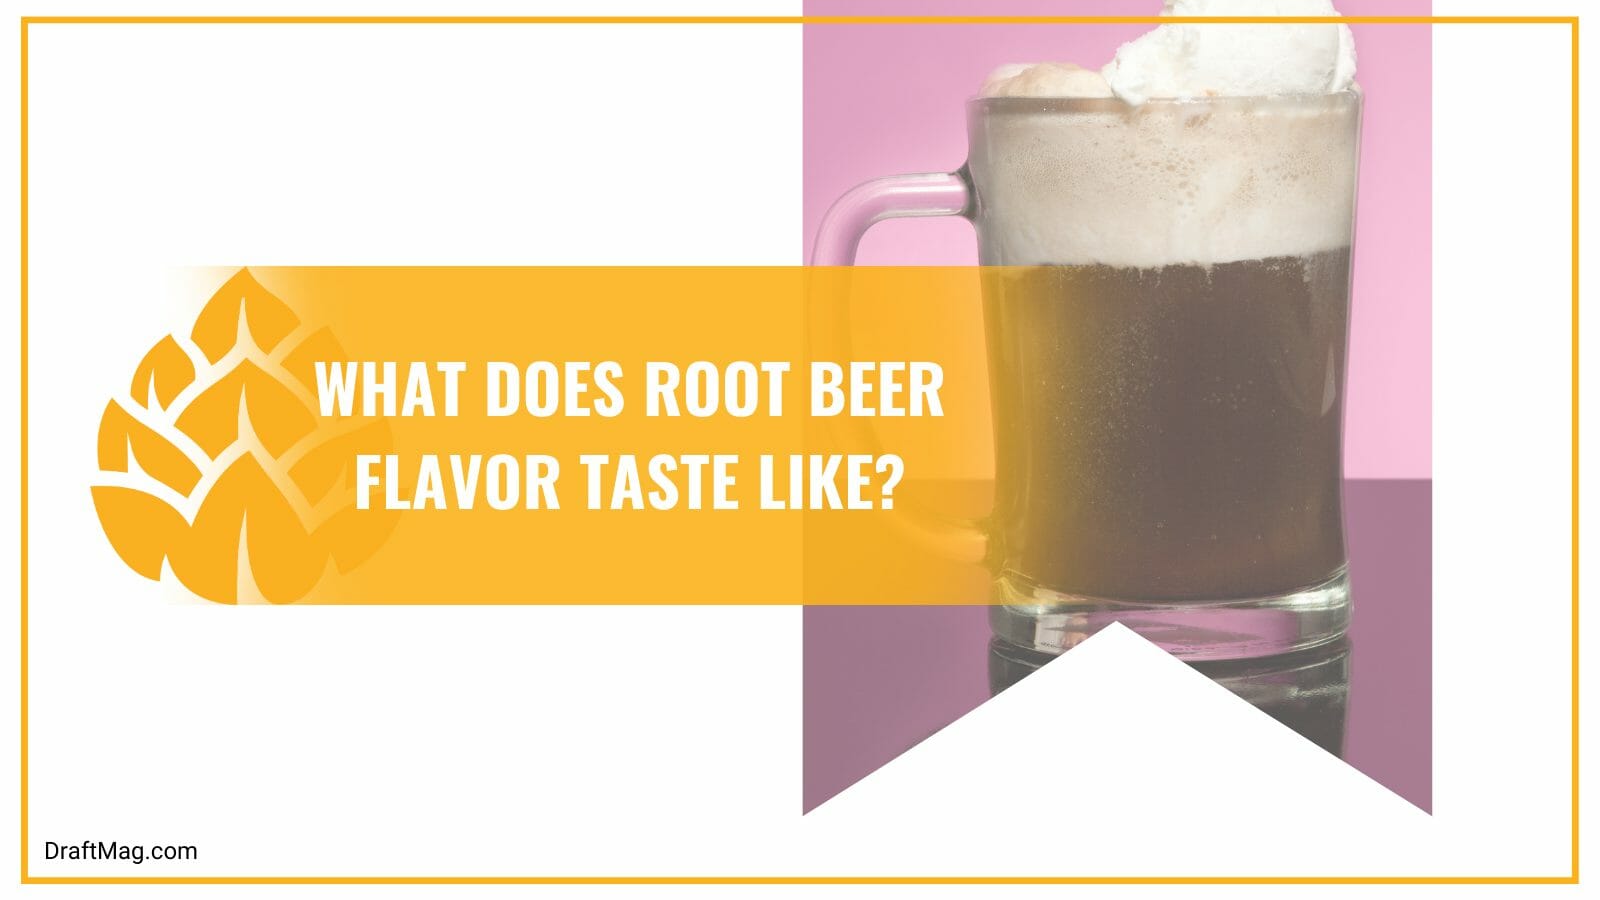 Flavor of root beer